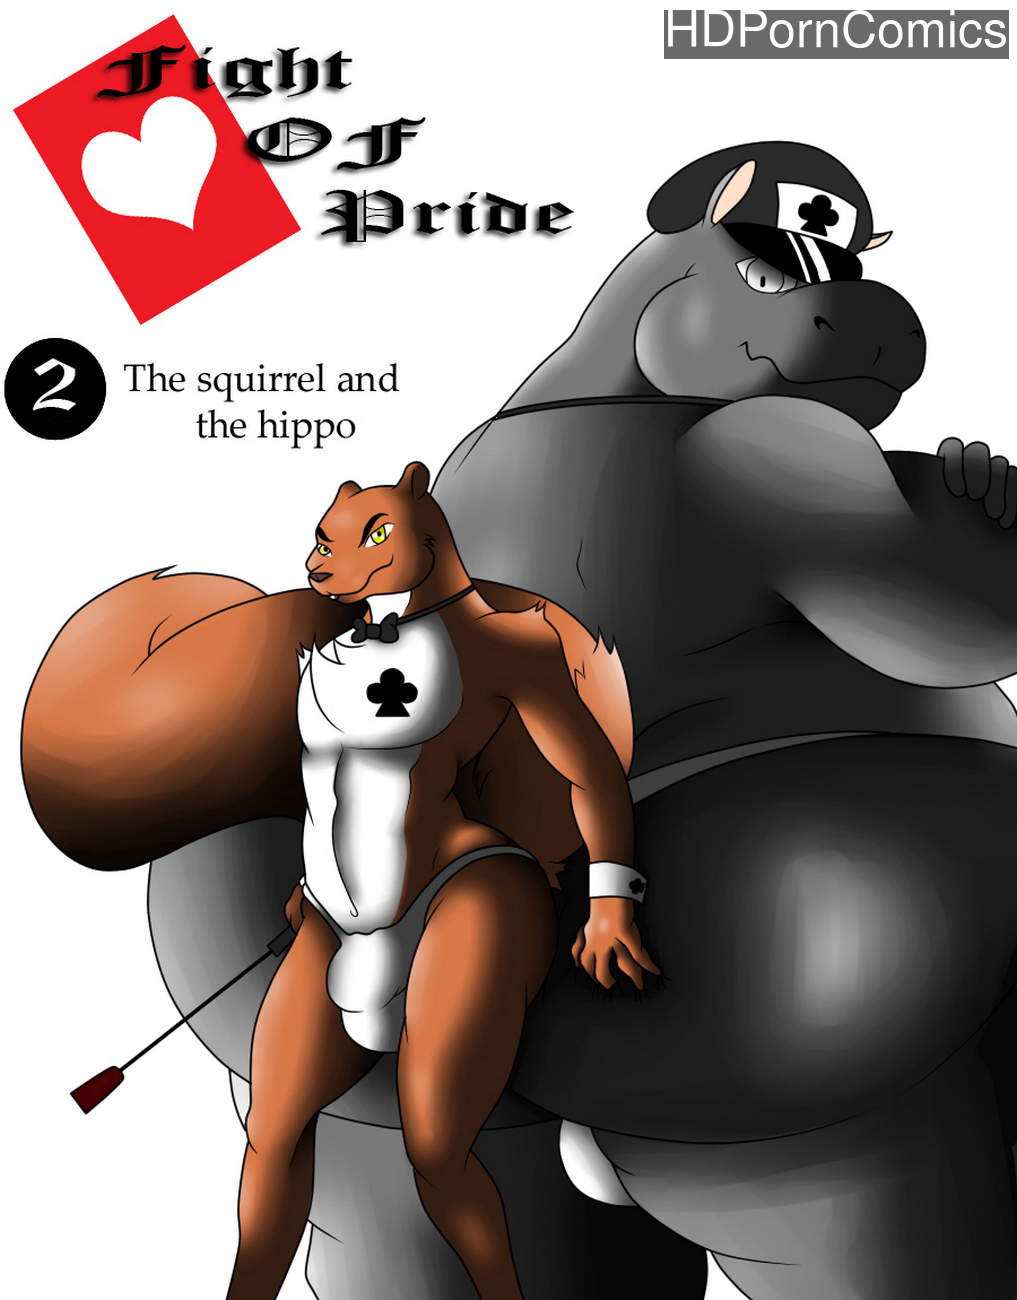 Fight Of Pride 2 - The Squirrel And The Hippo comic porn - HD Porn Comics